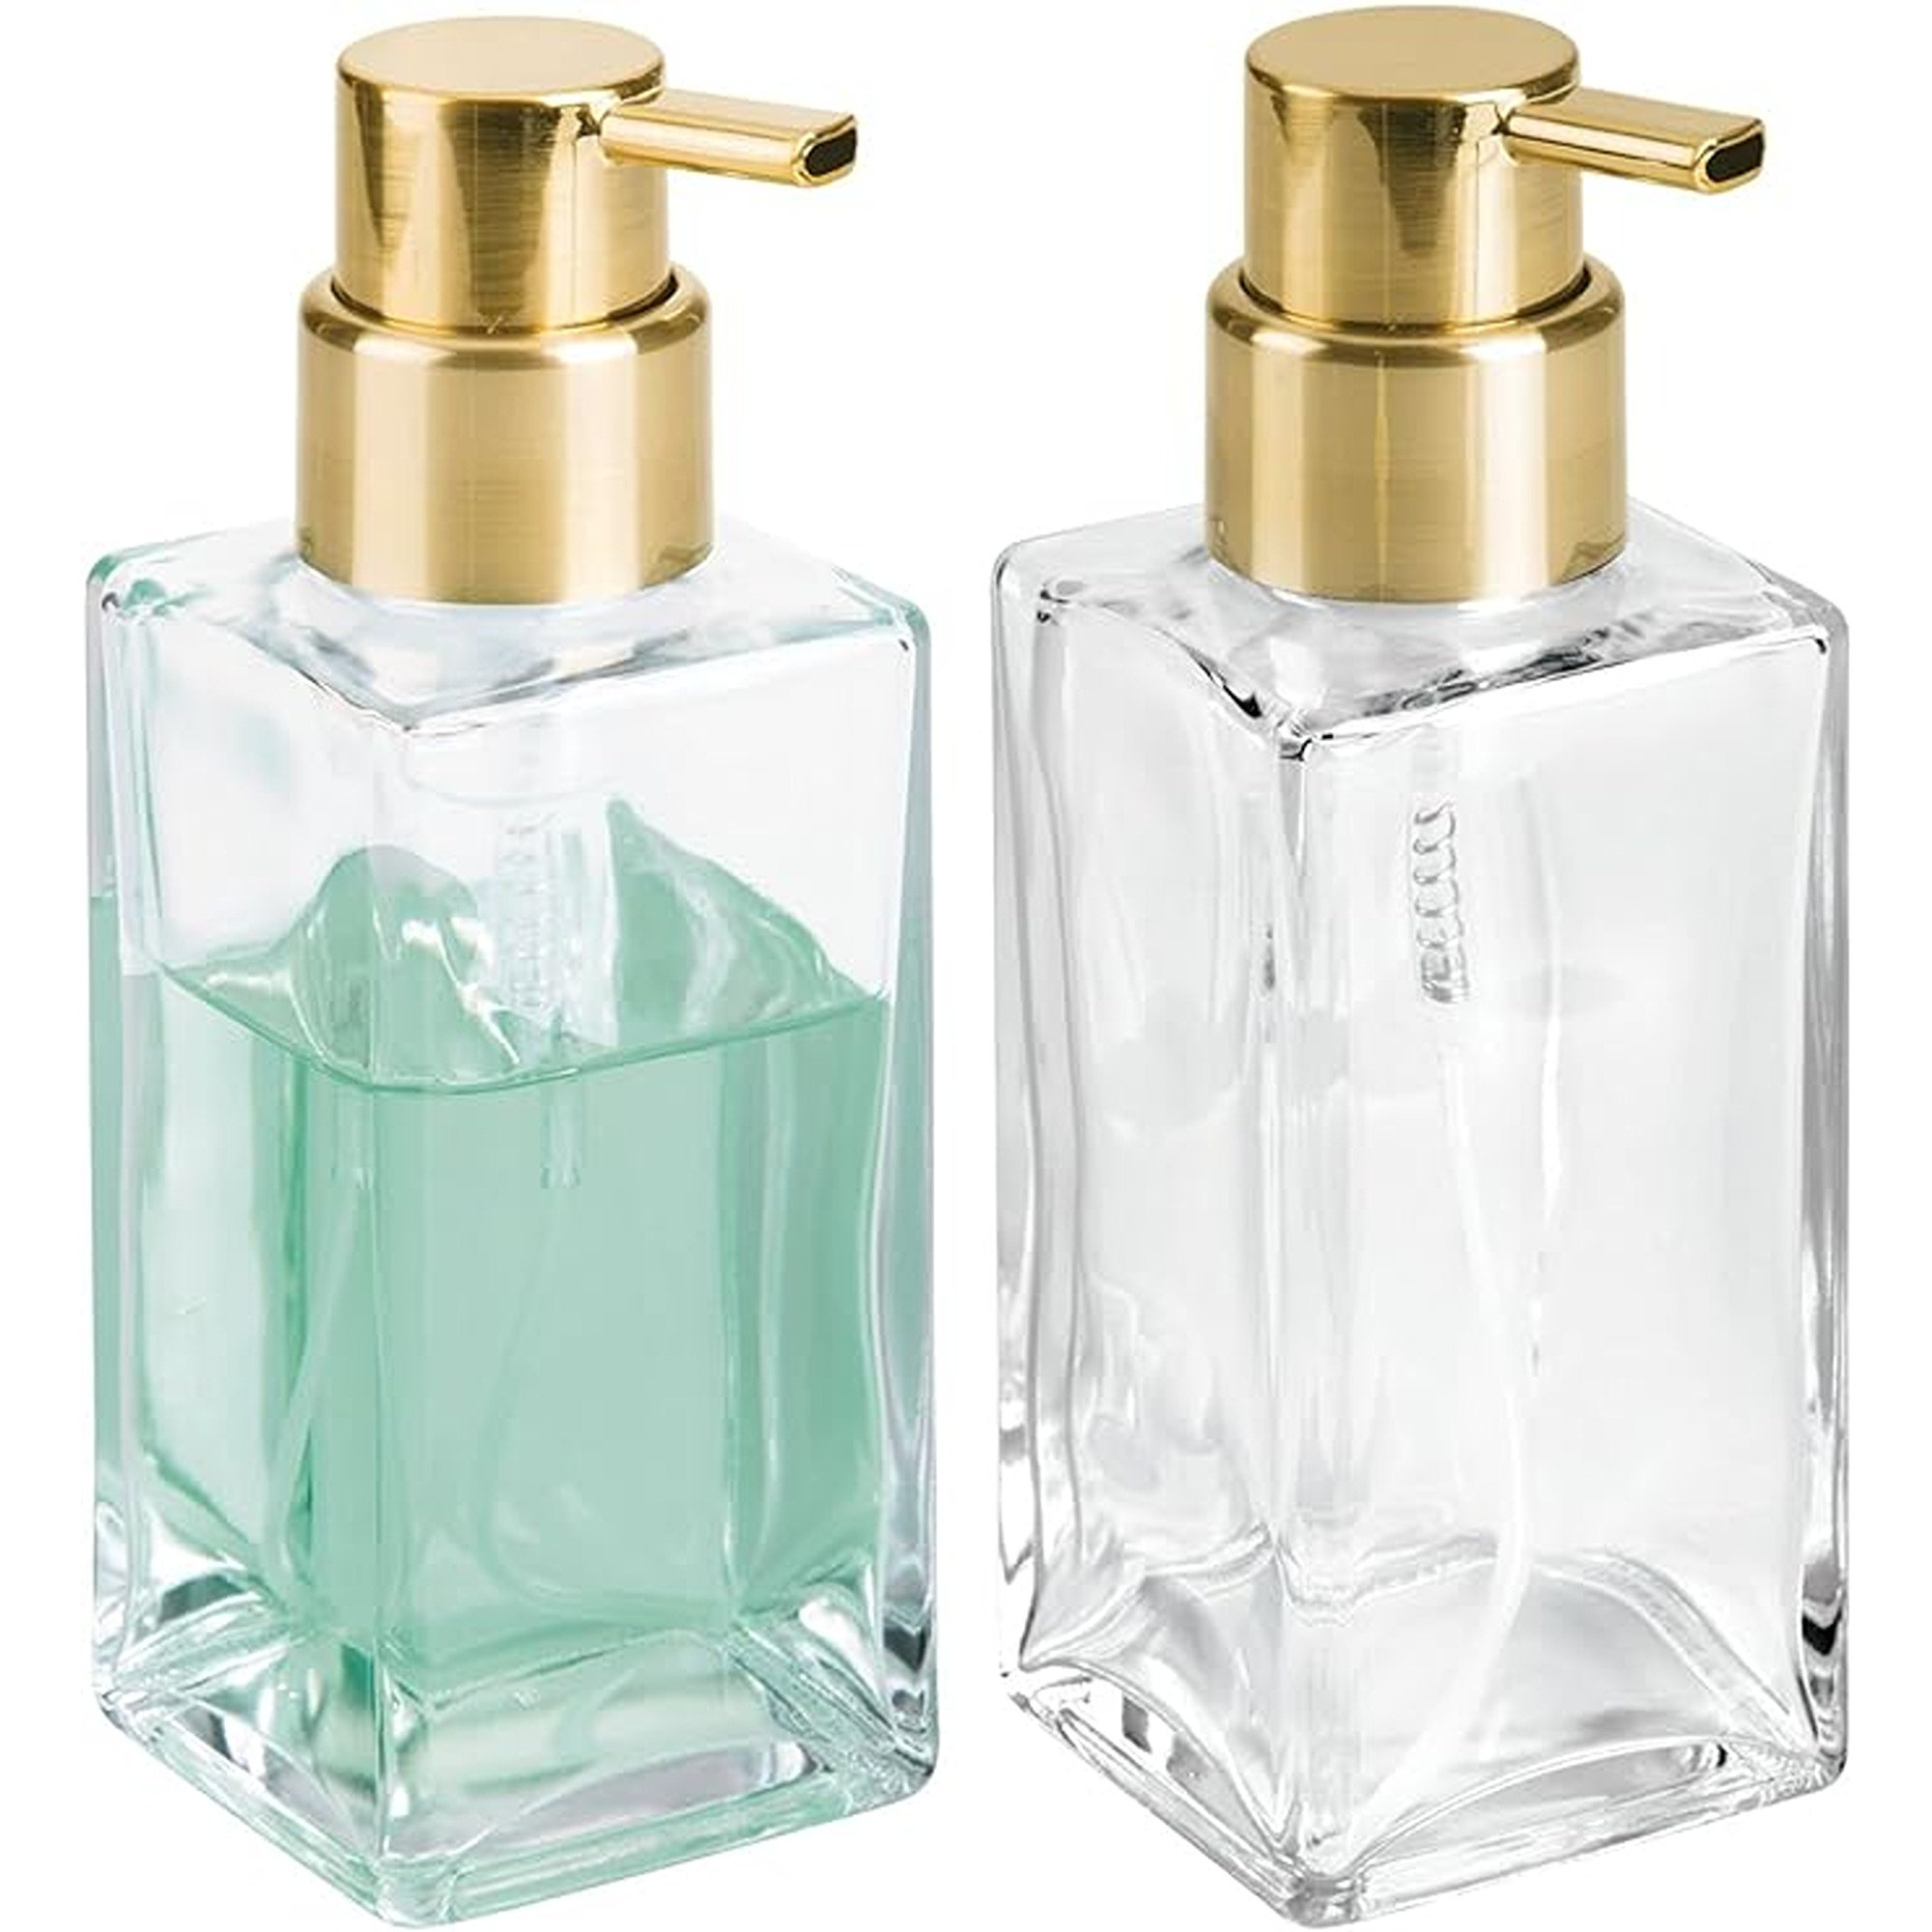 https://assets.wfcdn.com/im/22283481/compr-r85/2622/262289938/mdesign-glass-refillable-foaming-soap-dispenser-pump-2-pack-clearsoft-brass.jpg